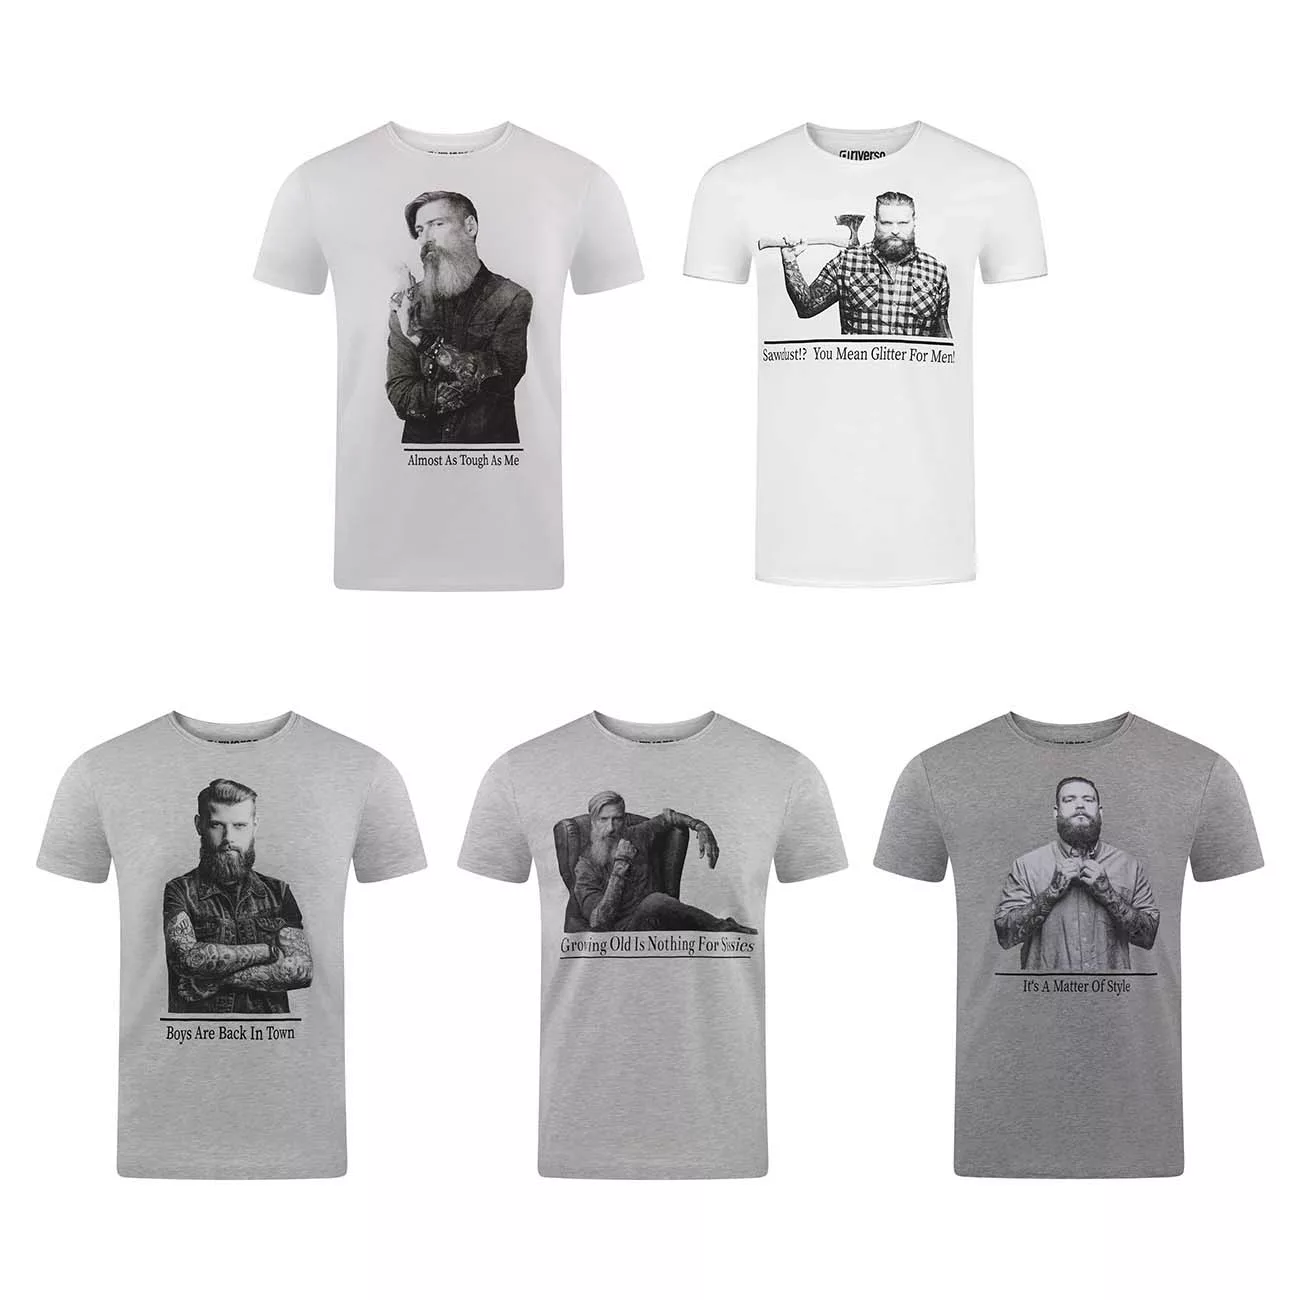 riverso Herren T-Shirt RIVHarald Regular Fit günstig online kaufen